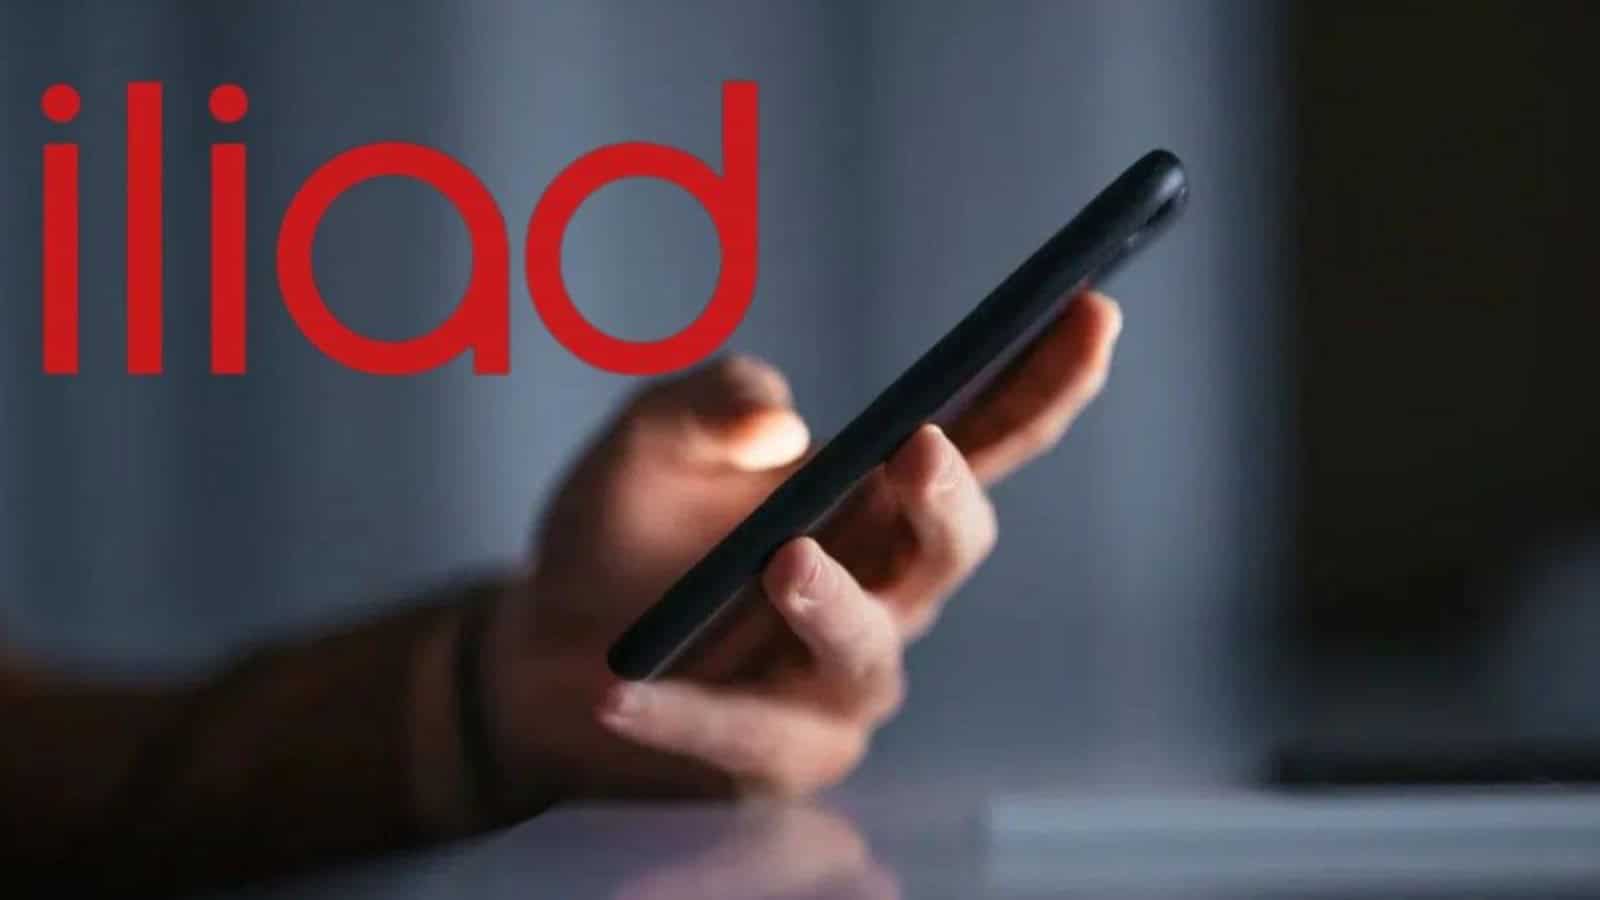 Iliad, la nuova offerta regala il 5G ed offre 180GB